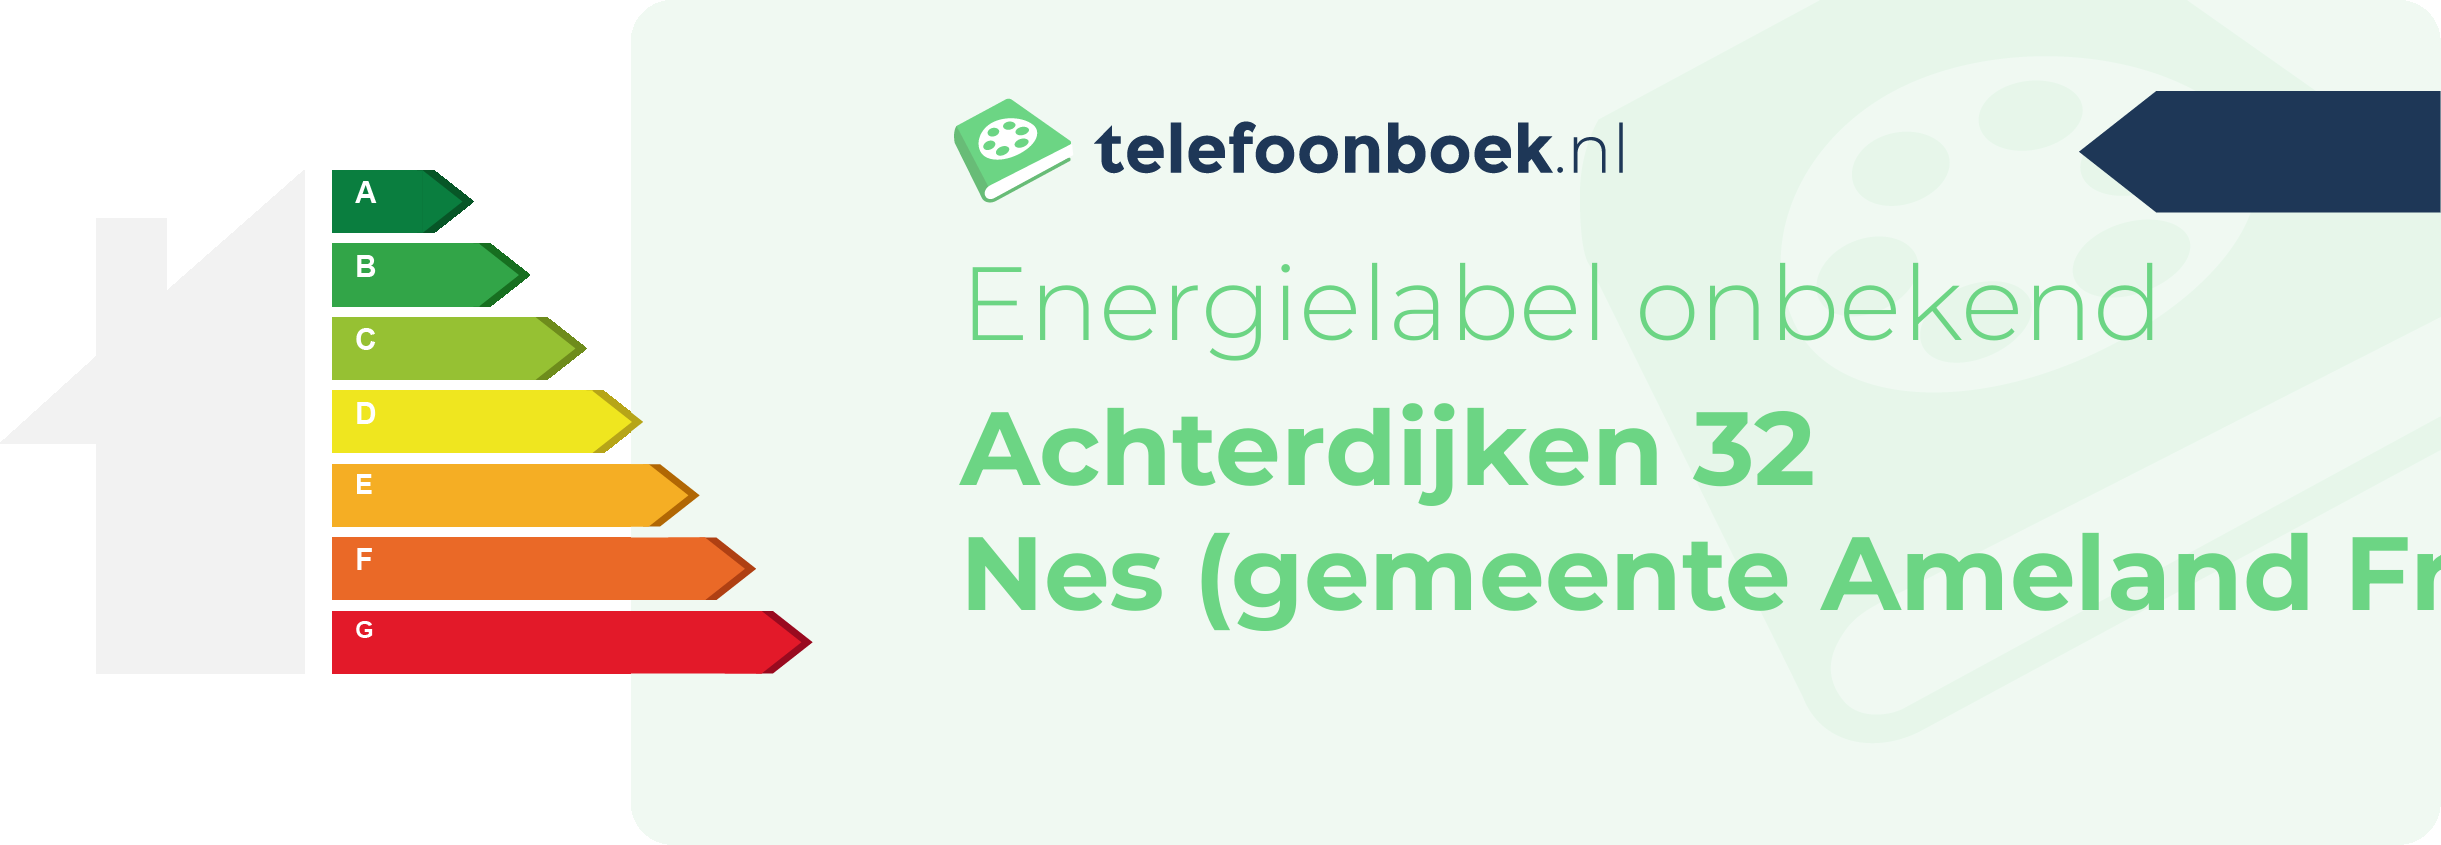 Energielabel Achterdijken 32 Nes (gemeente Ameland Friesland)